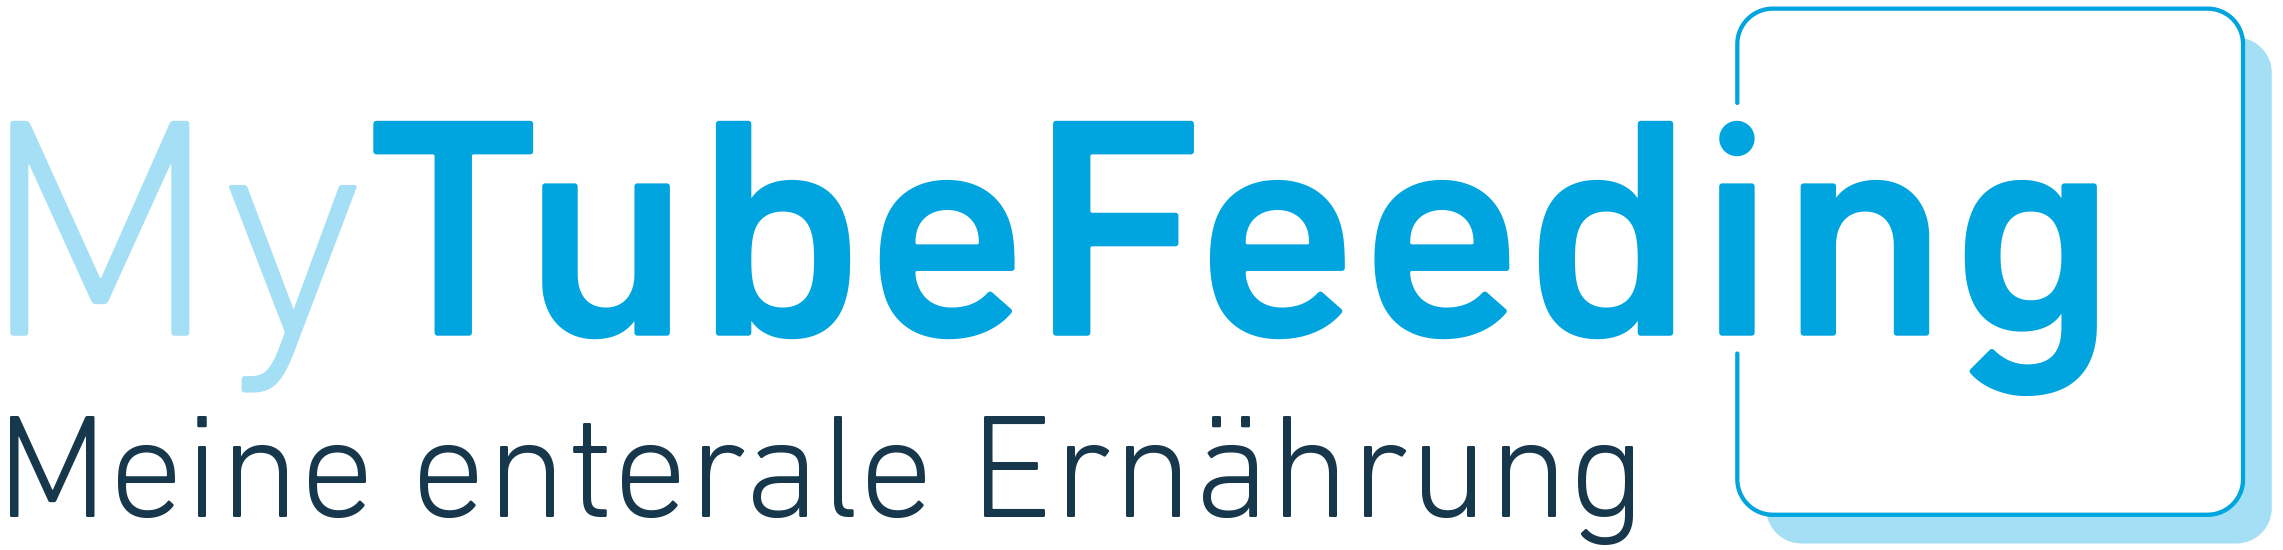 my tube feeding logo